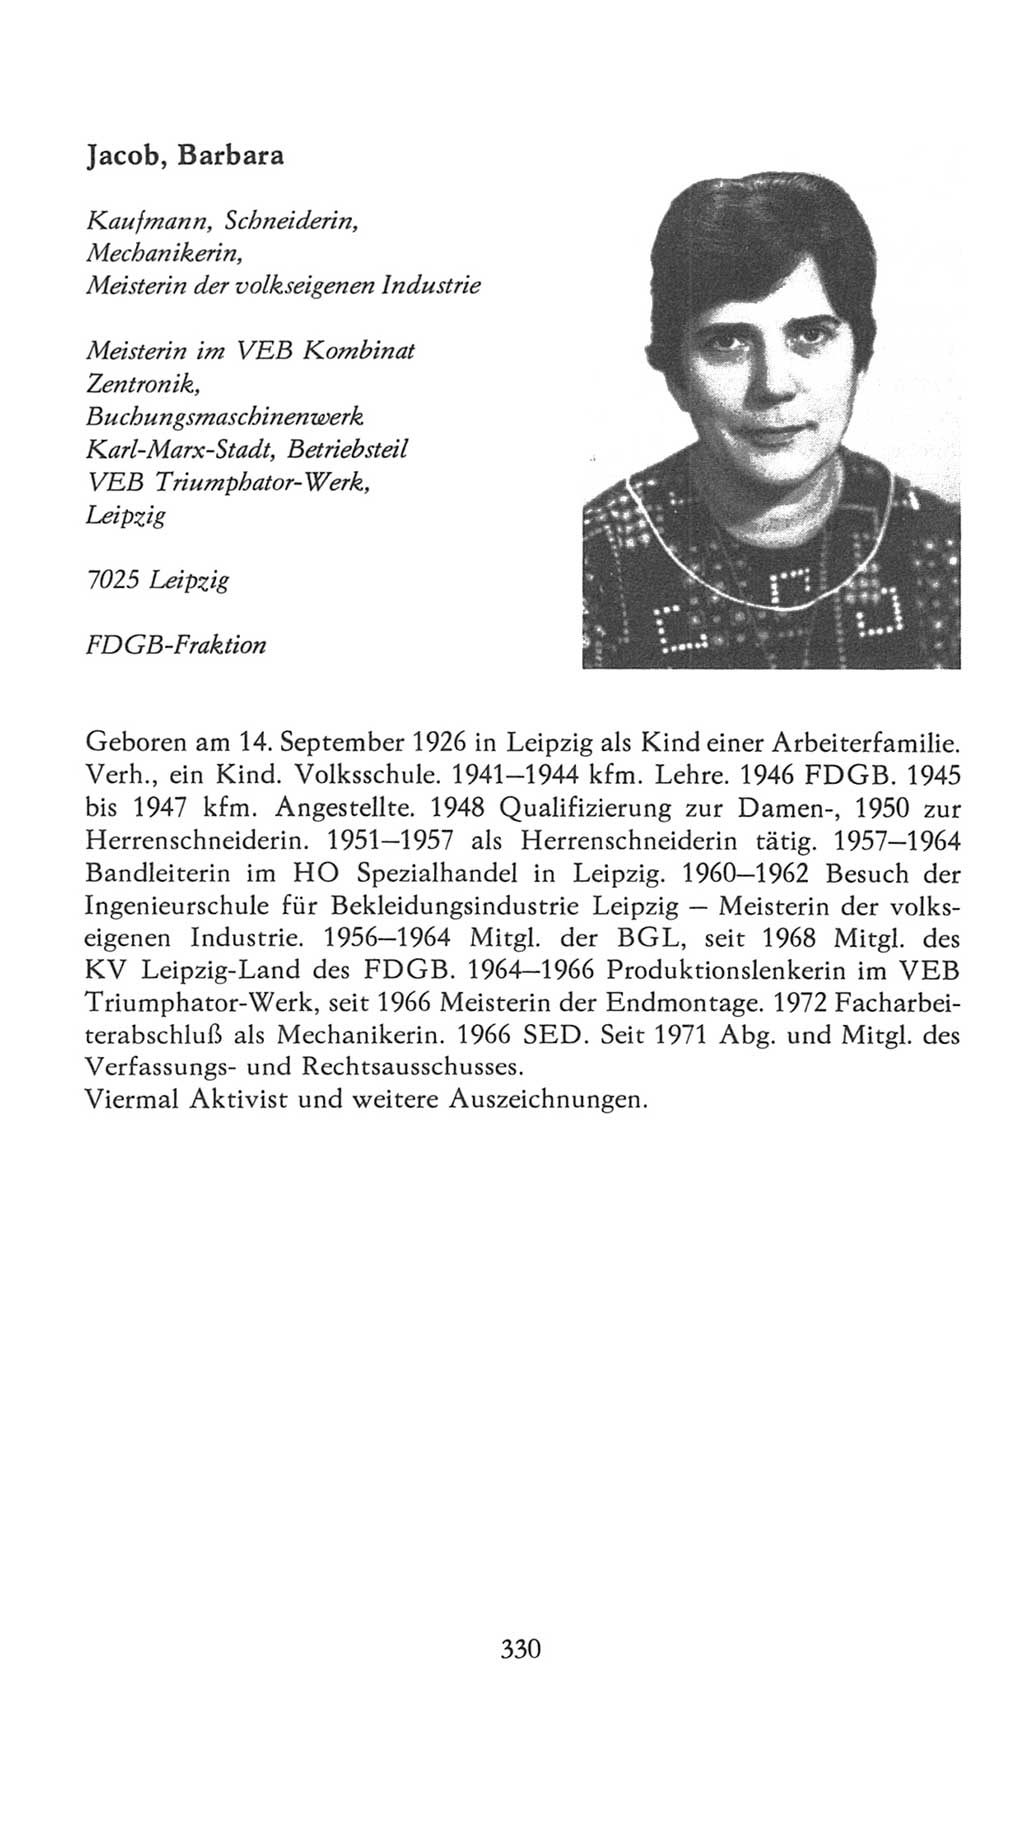 Volkskammer (VK) der Deutschen Demokratischen Republik (DDR), 7. Wahlperiode 1976-1981, Seite 330 (VK. DDR 7. WP. 1976-1981, S. 330)